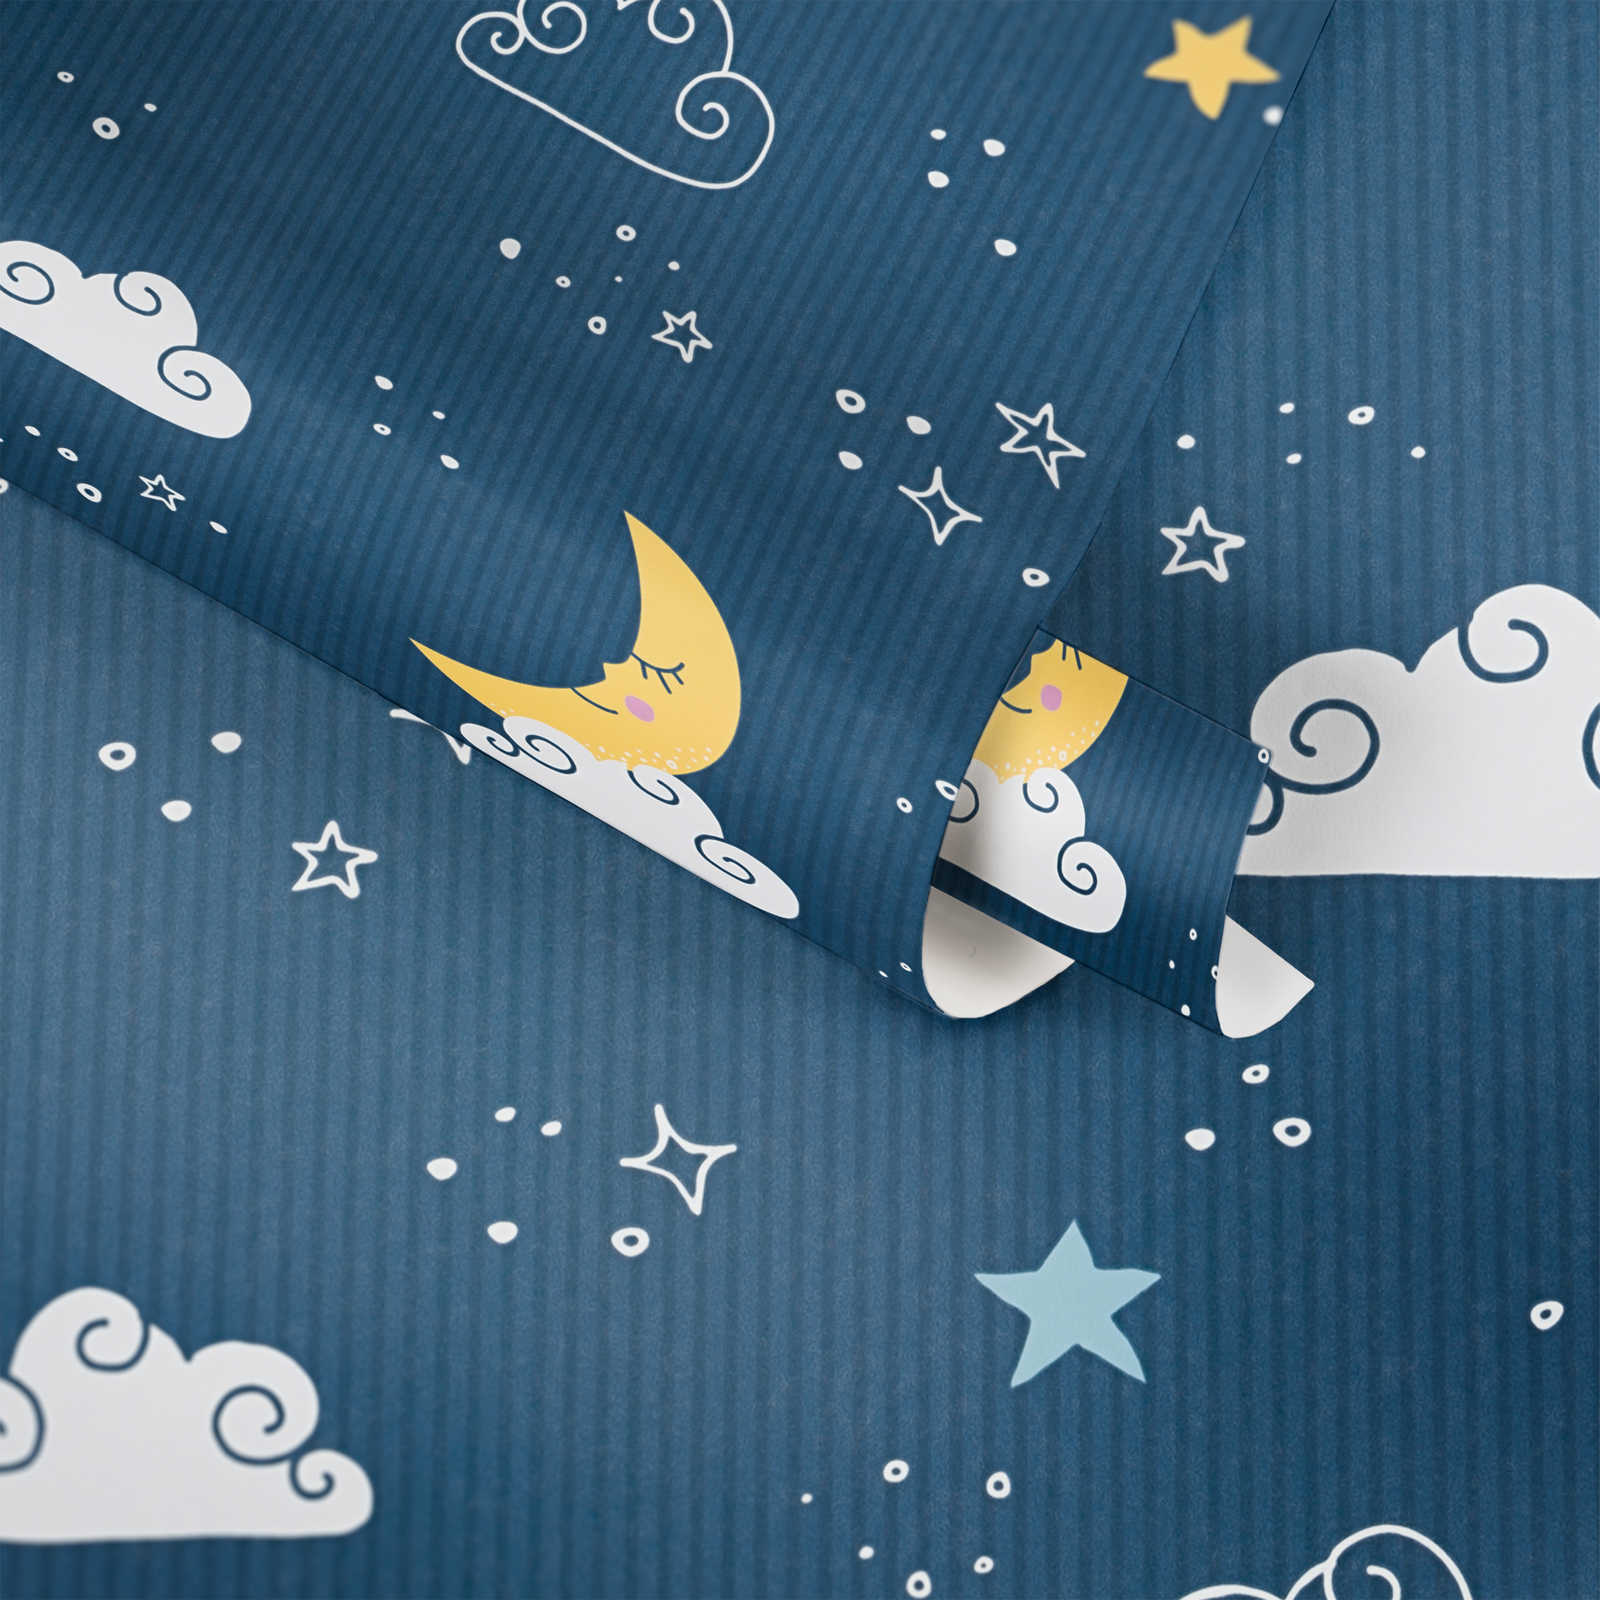             Papier peint chambre enfant Ciel de nuit - Bleu, blanc, jaune
        